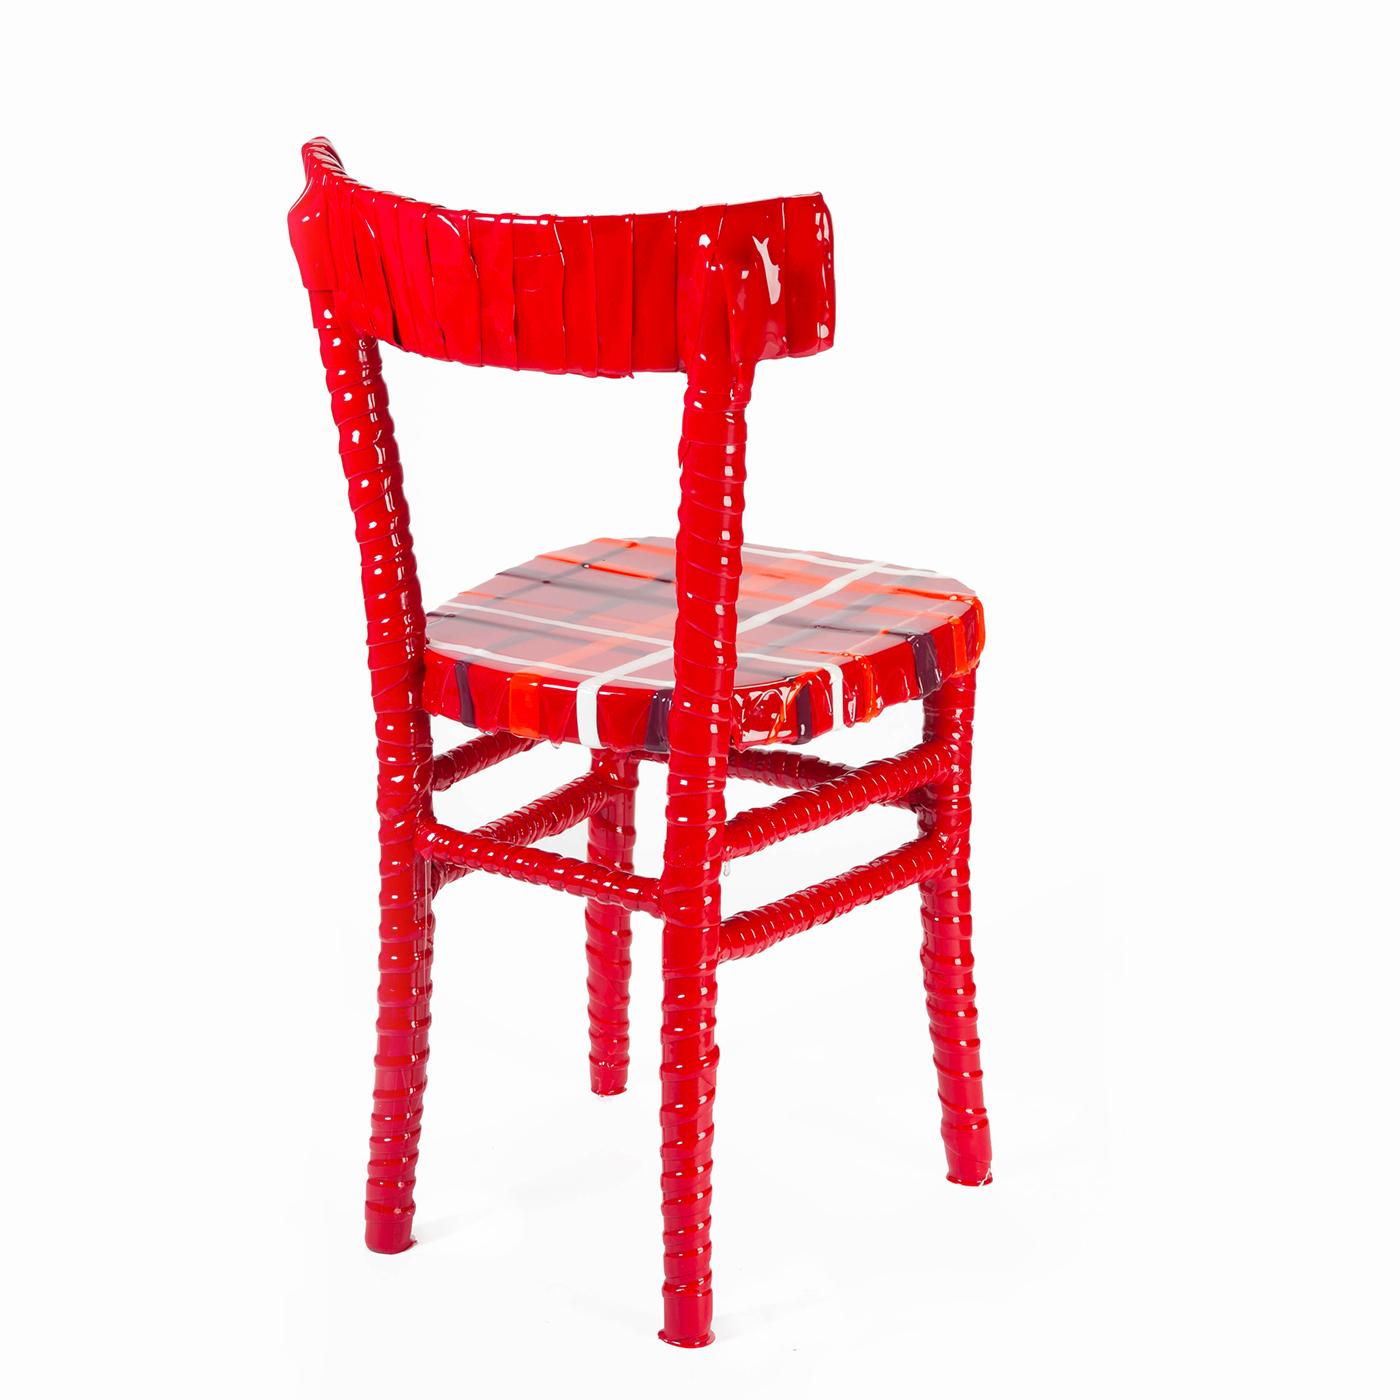 Als Teil der One-Off-Kollektion von Paola Navona ist dieser upgecycelte Stuhl ein einzigartiges Stück. Der verlassene Holzstuhl wurde mit einer leuchtend roten Harzbeschichtung, die von den Handwerkern der Corsi Design Factory fachmännisch